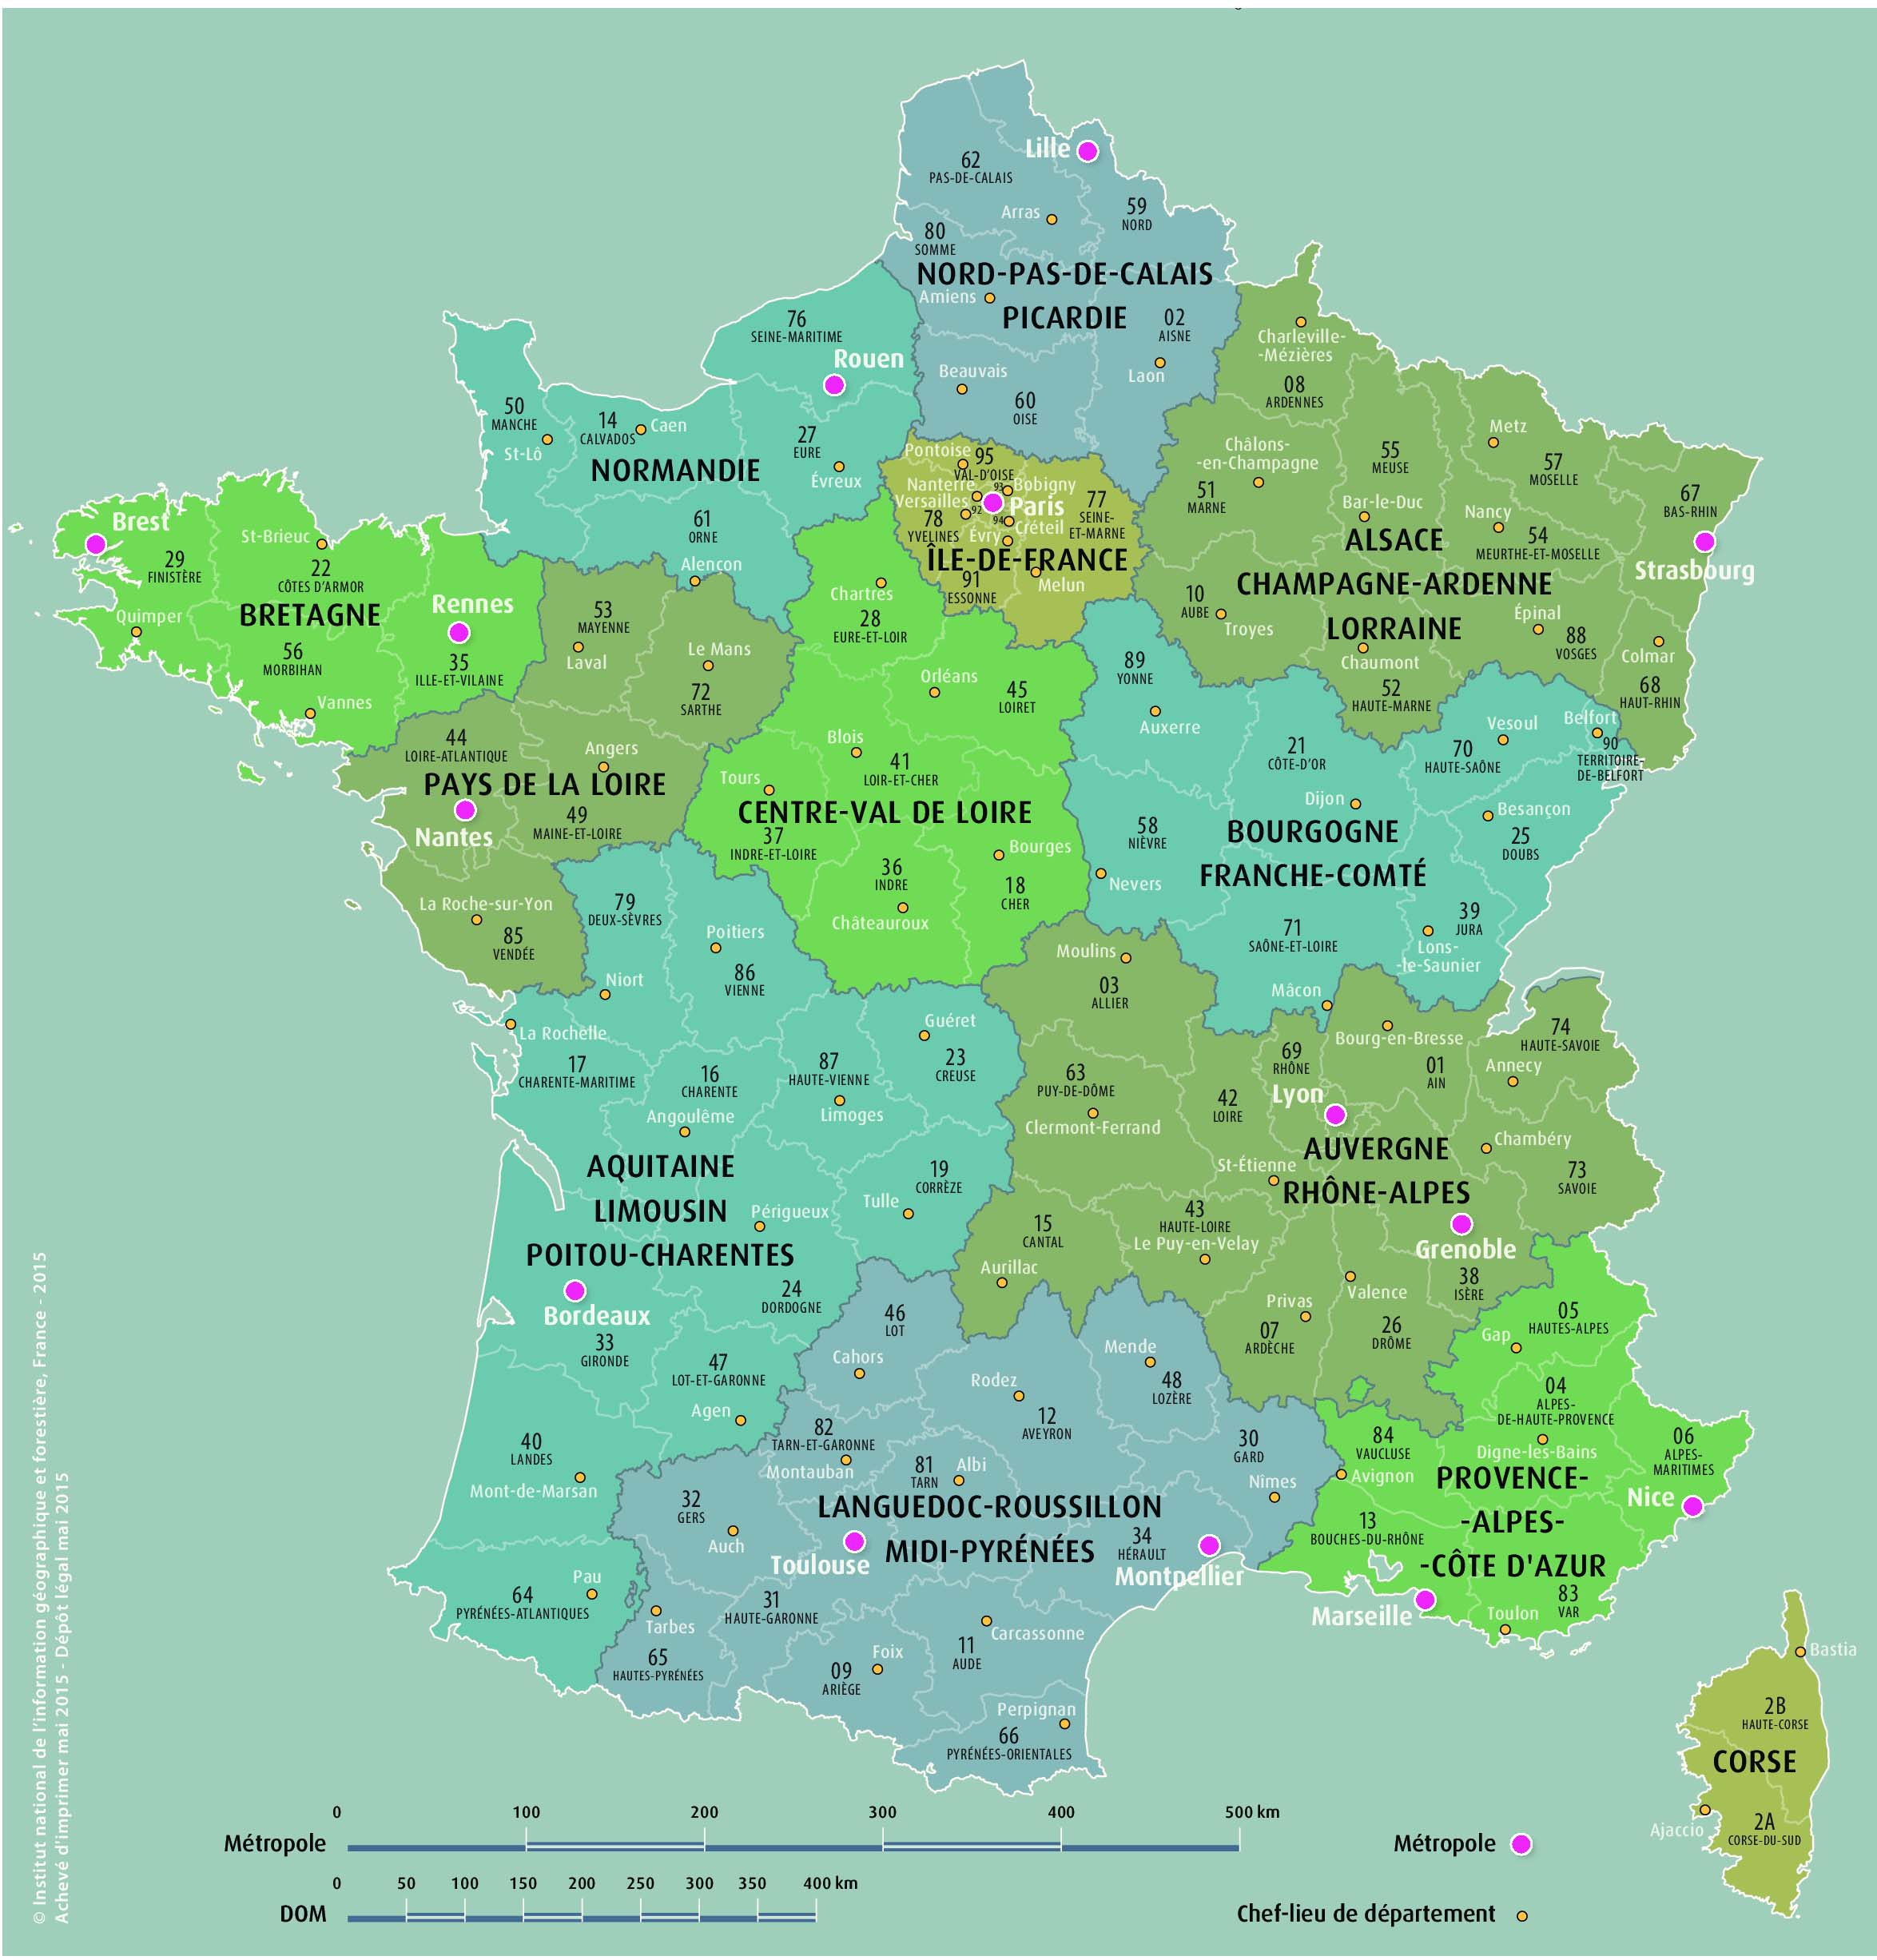 Carte Des 13 Nouvelles Régions De France - Primanyc concernant Carte De France Region A Completer